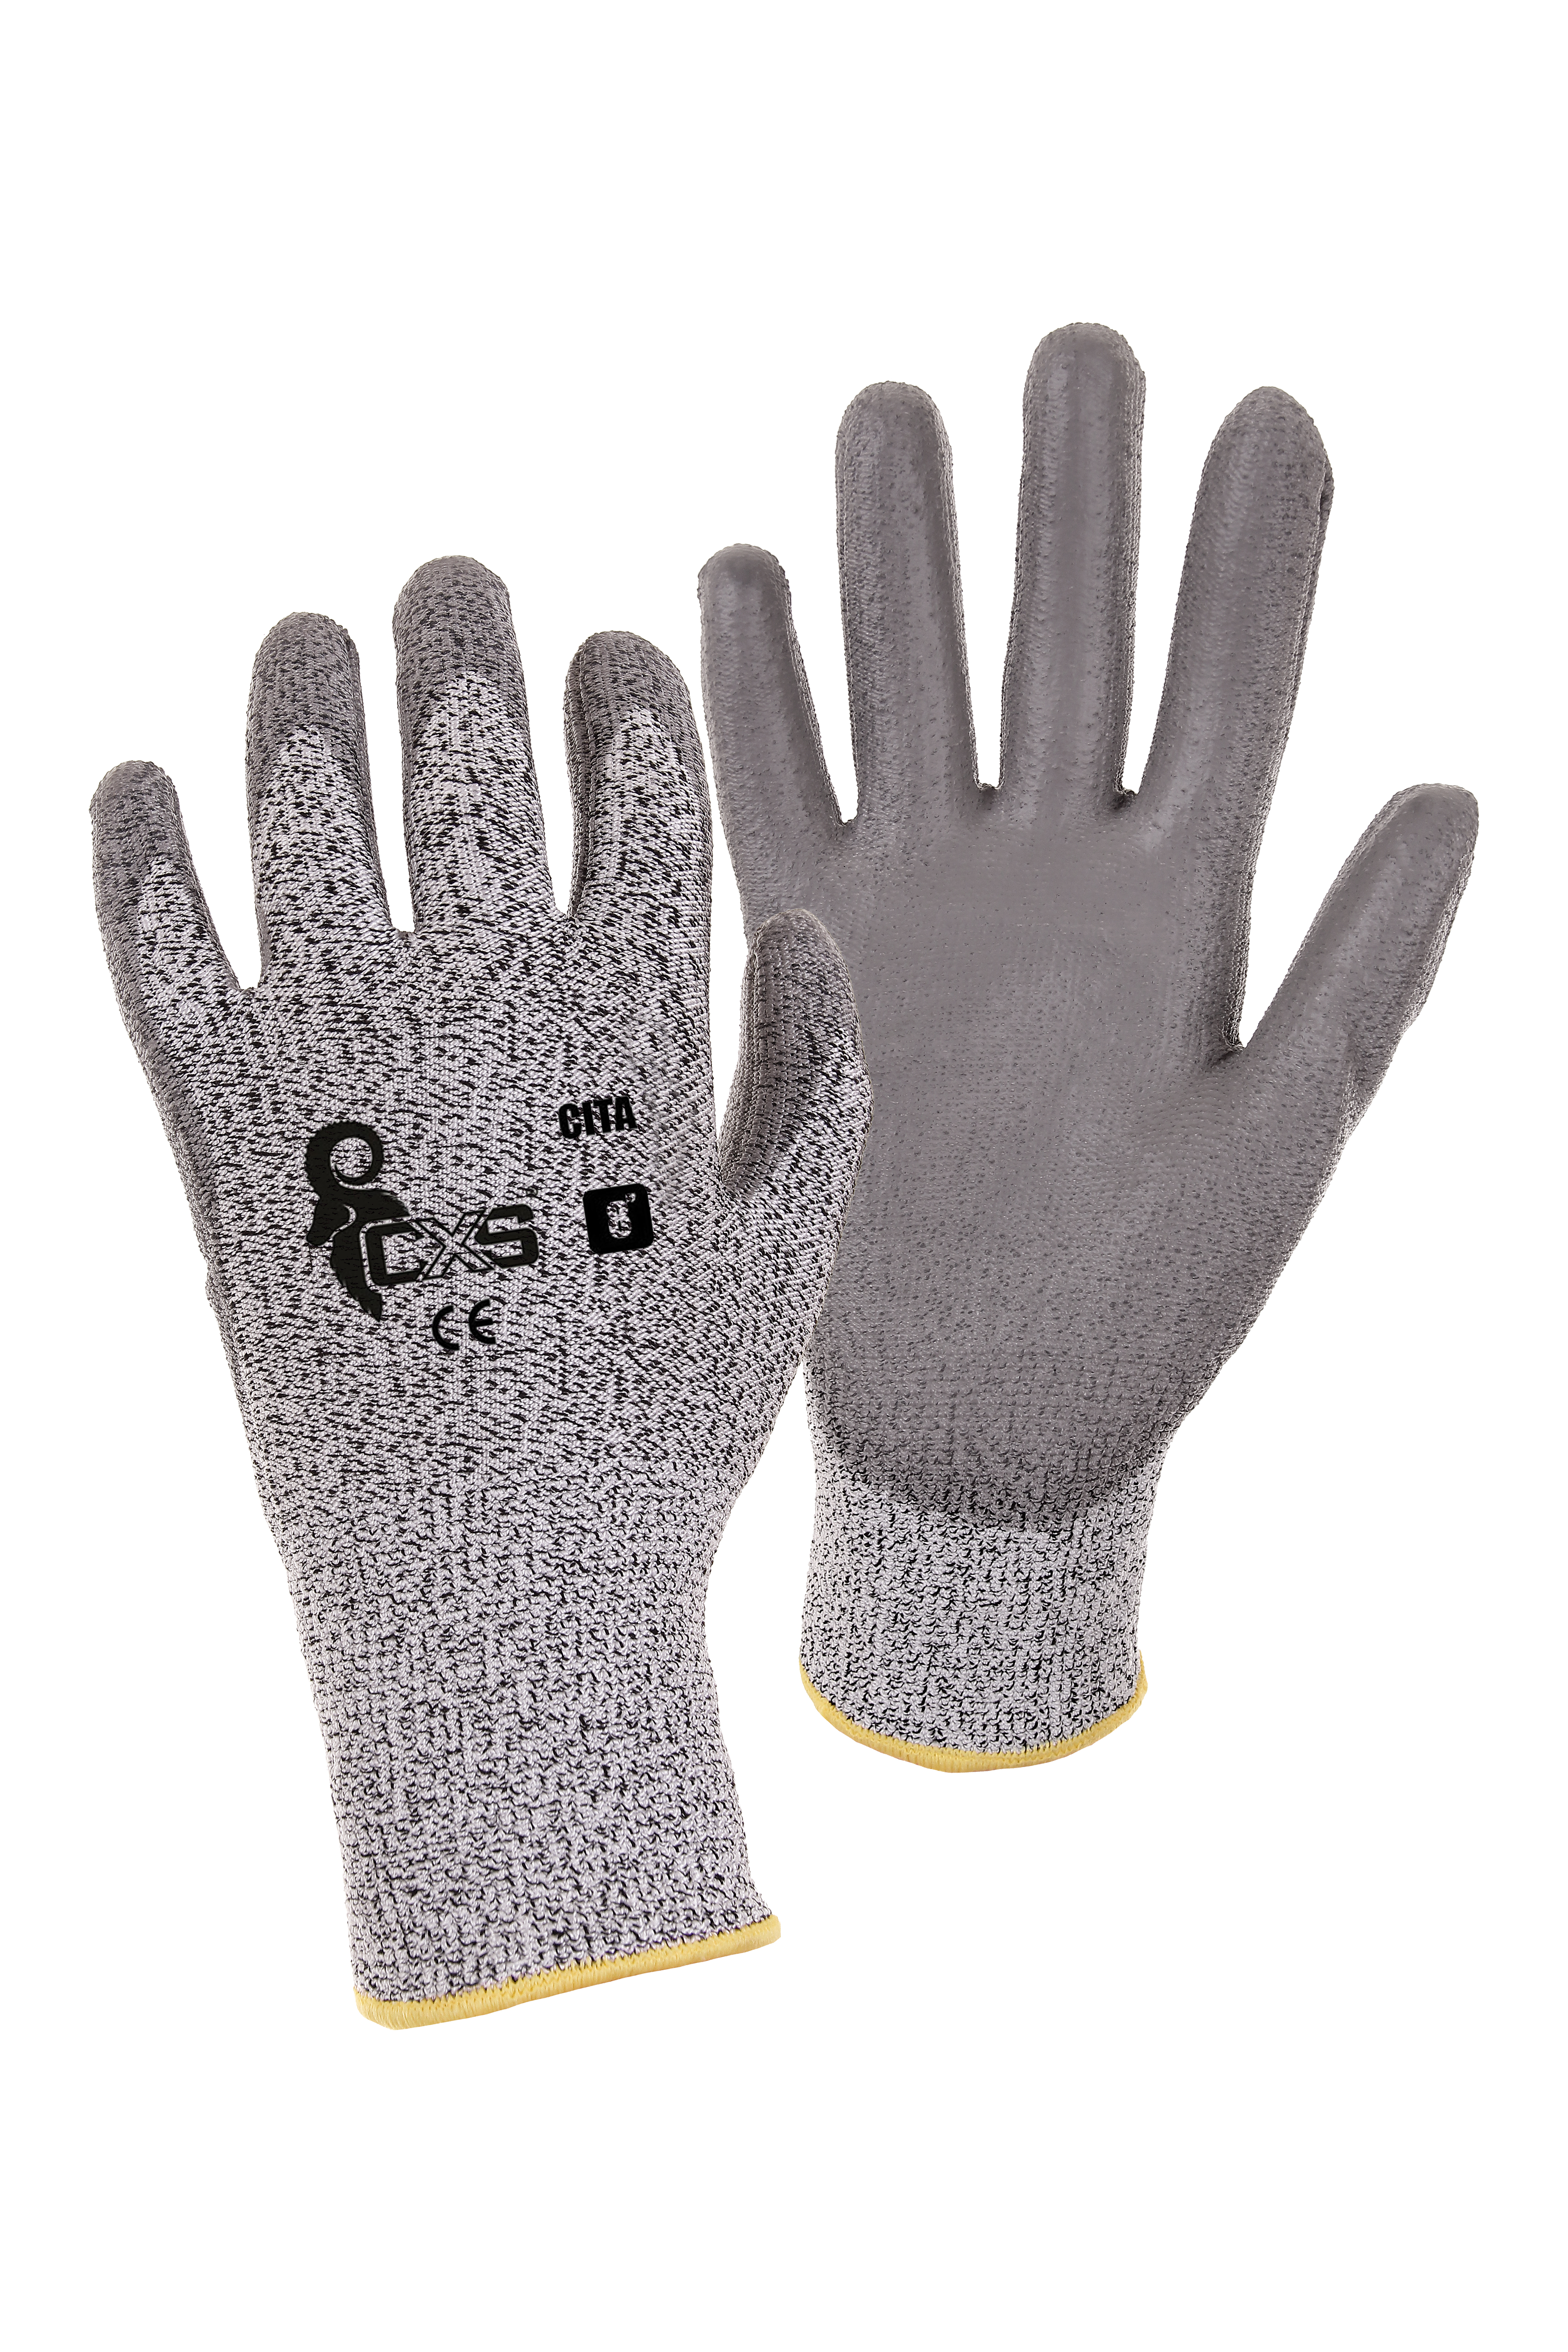 rukavice CITA, protipořezové, šedé, velikost 6 0.04 Kg TOP Sklad4 606056 29